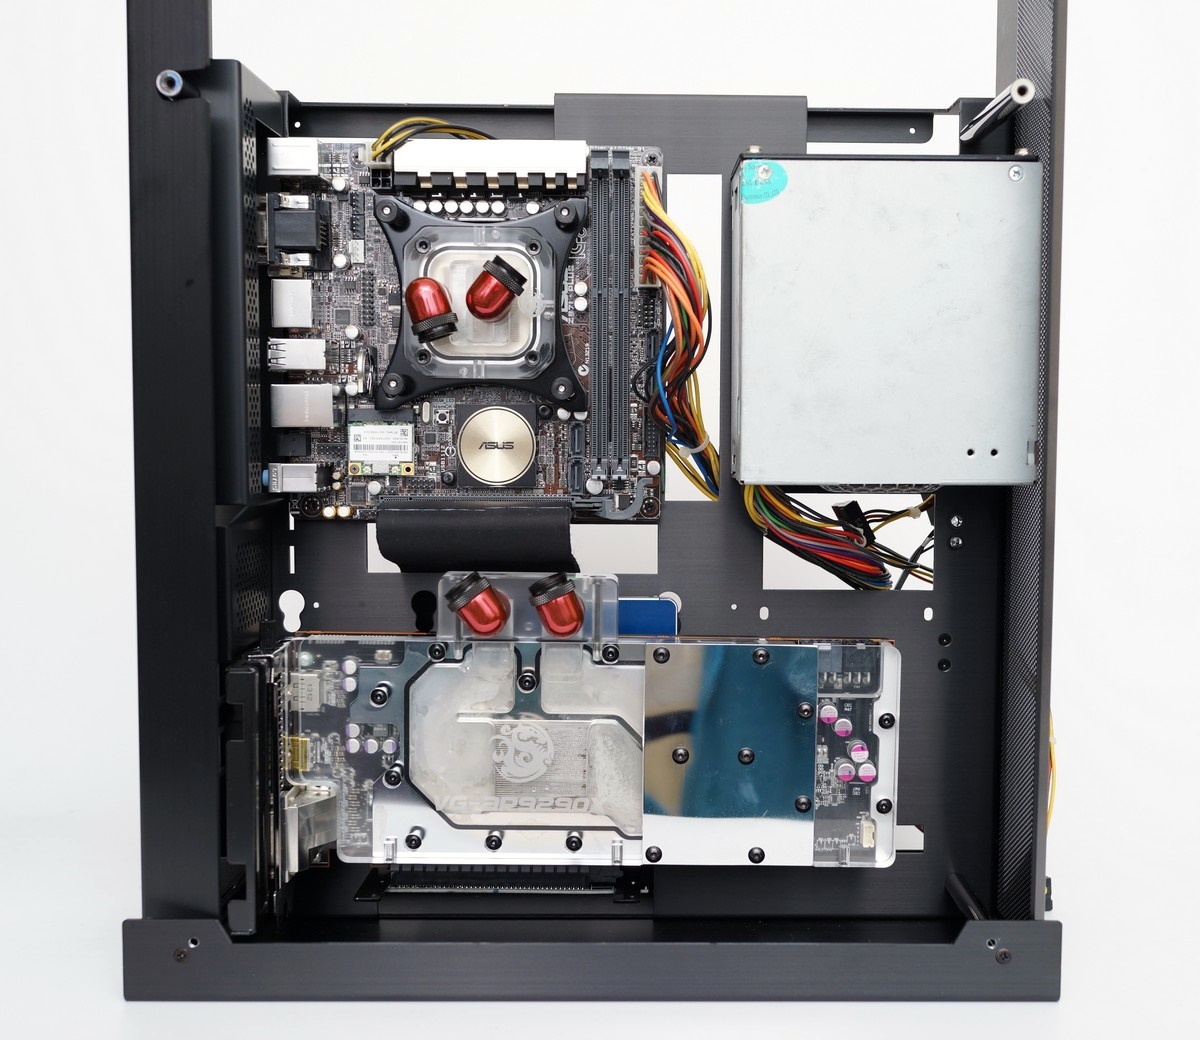 [XF] 內裝ITX大容量 精巧設計工藝不凡 LIAN LI PC-O5S機殼評測